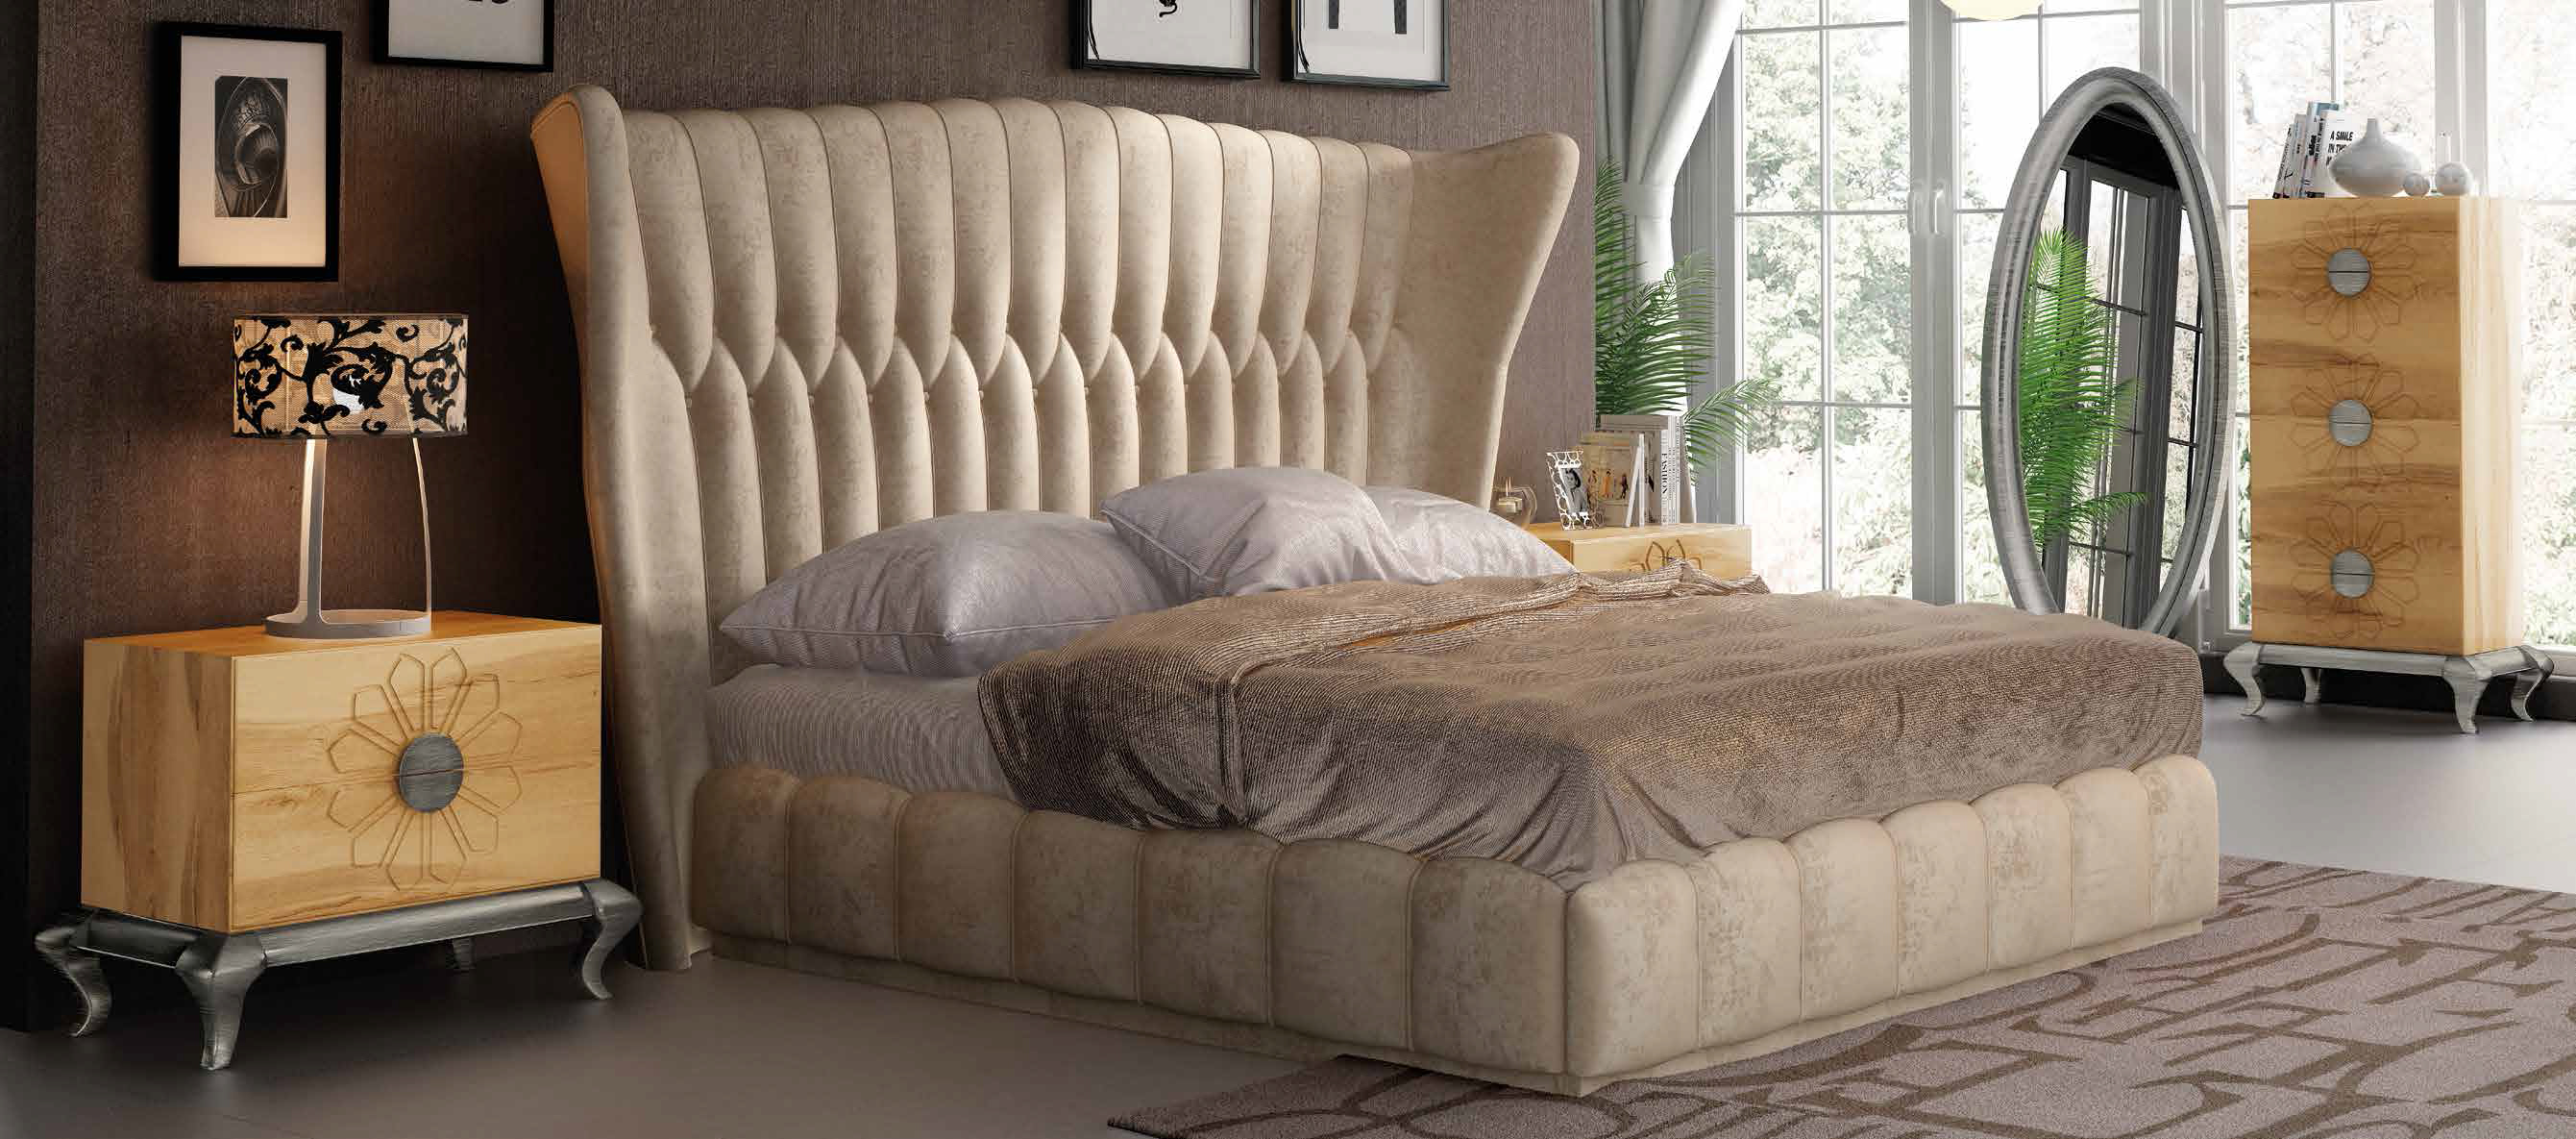 Brands Franco Furniture Avanty Bedrooms, Spain DOR 61